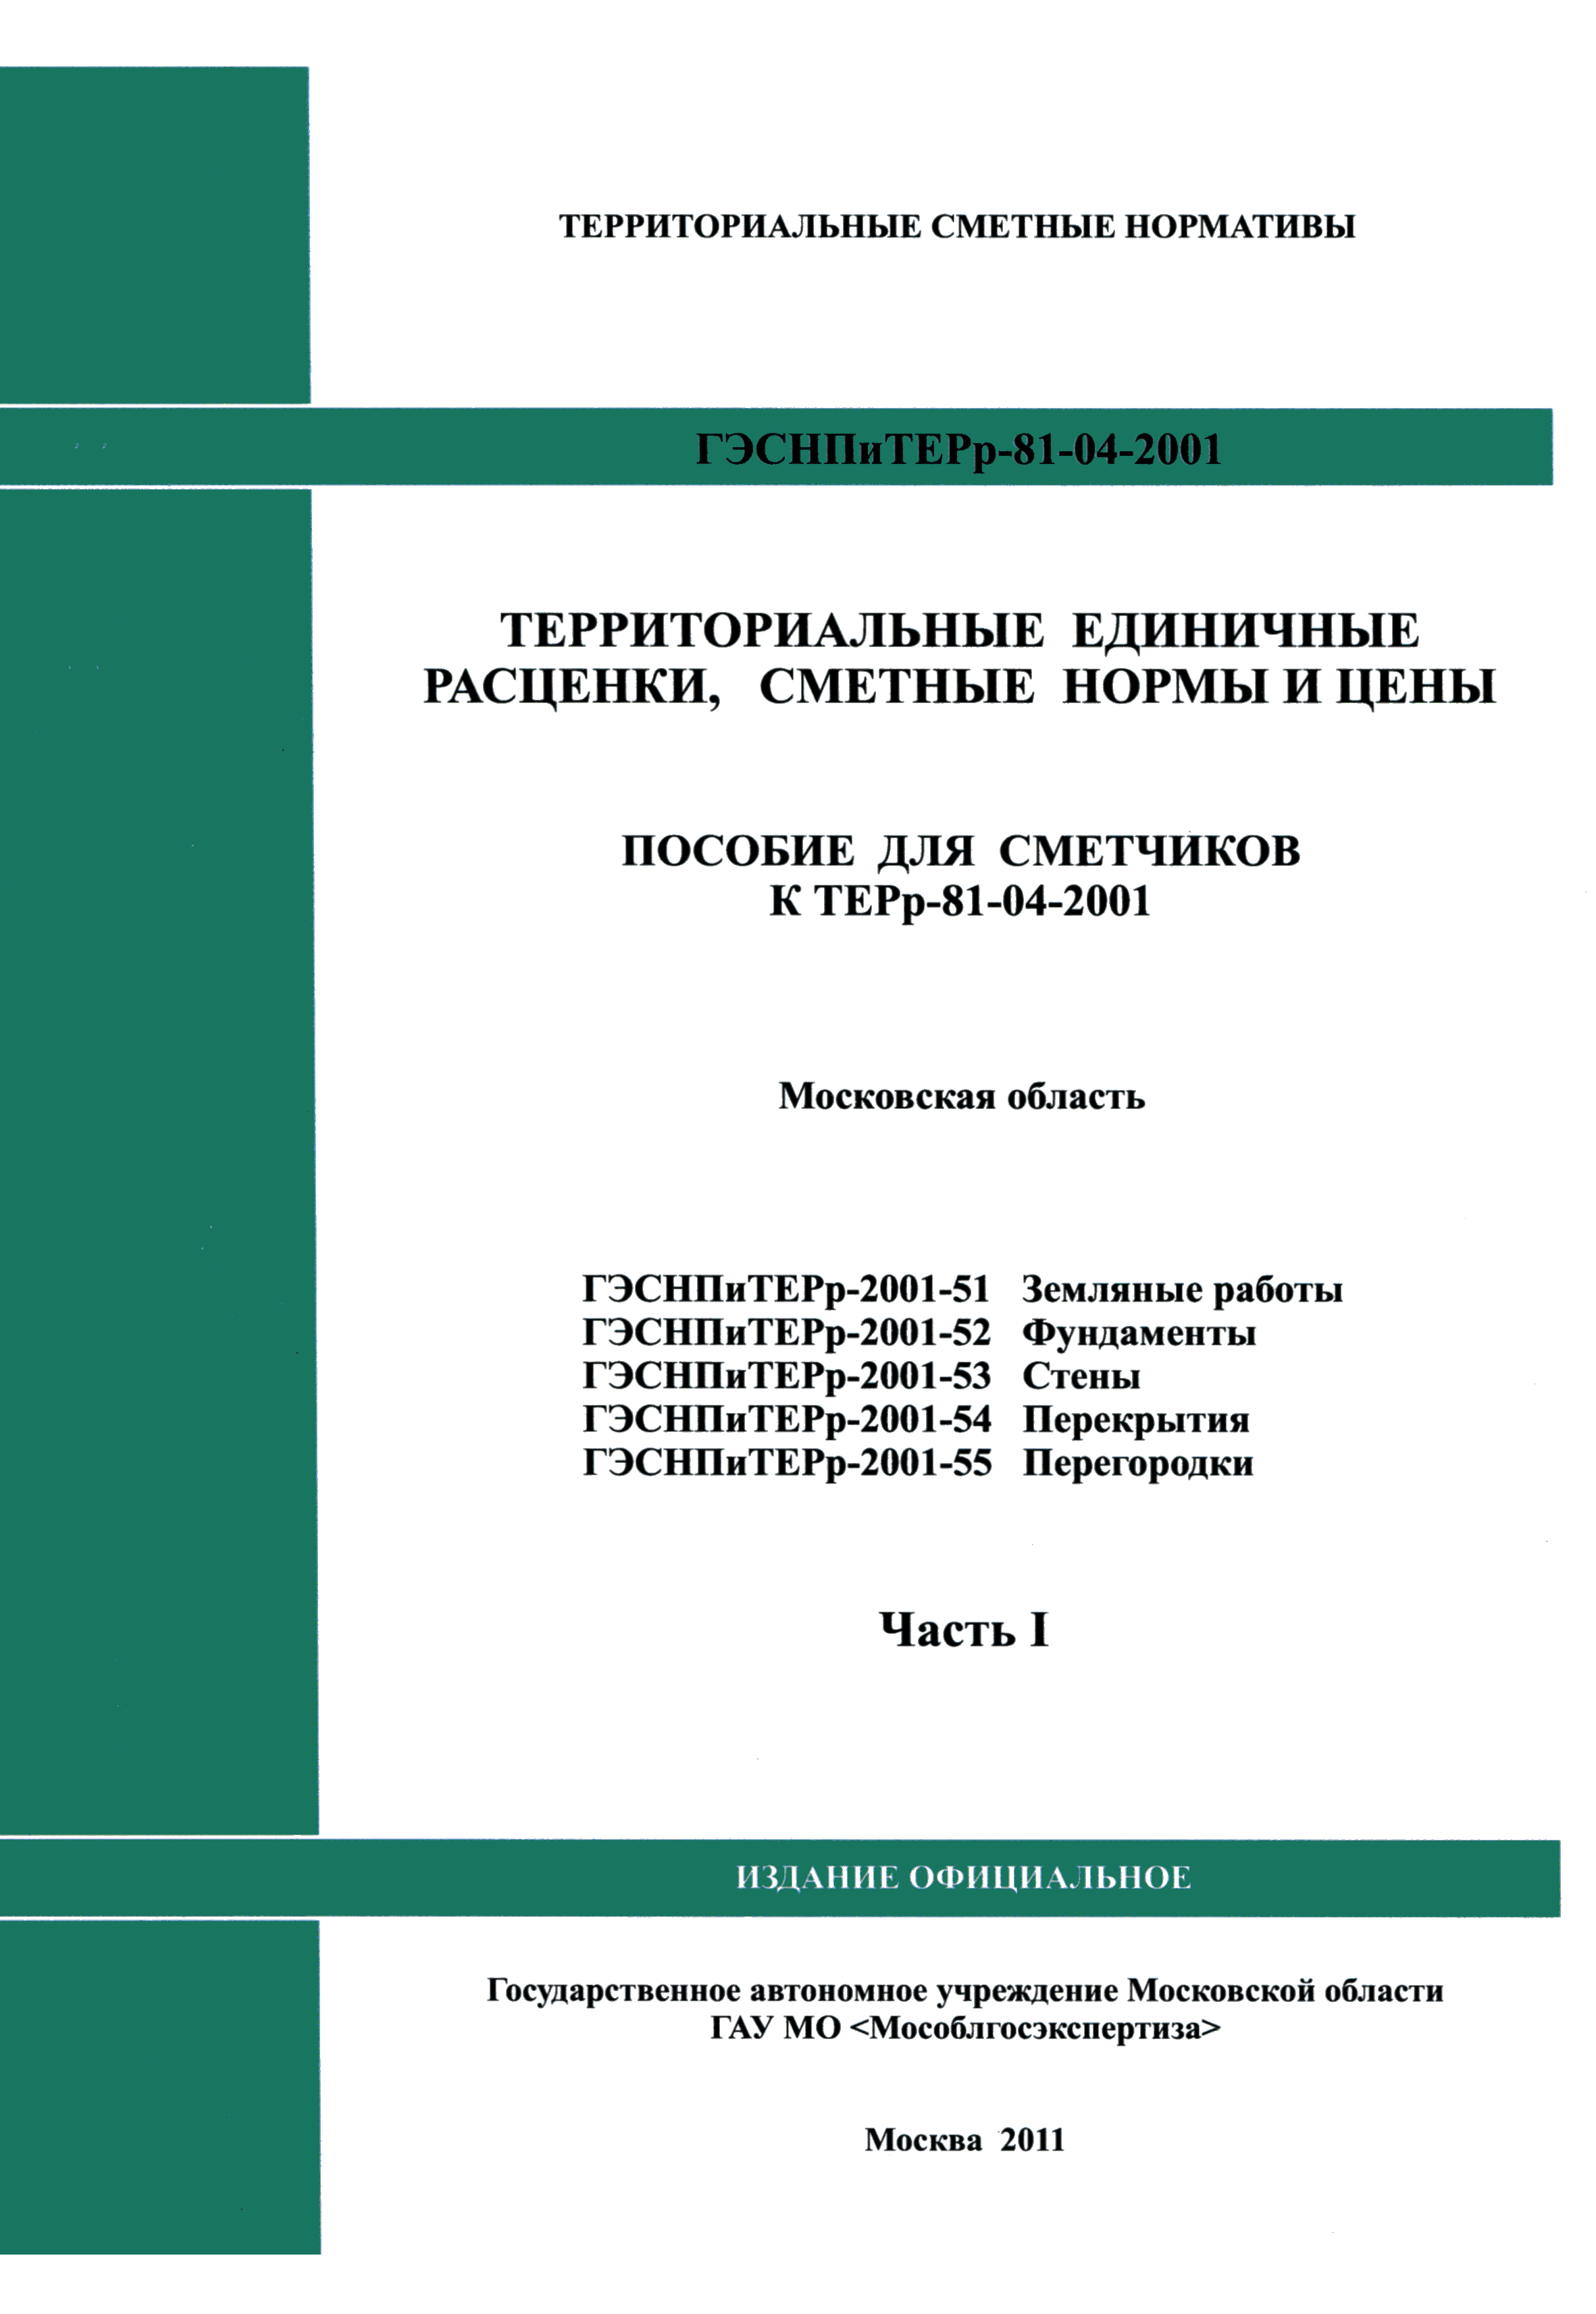 ГЭСНПиТЕРр 2001-51 Московской области